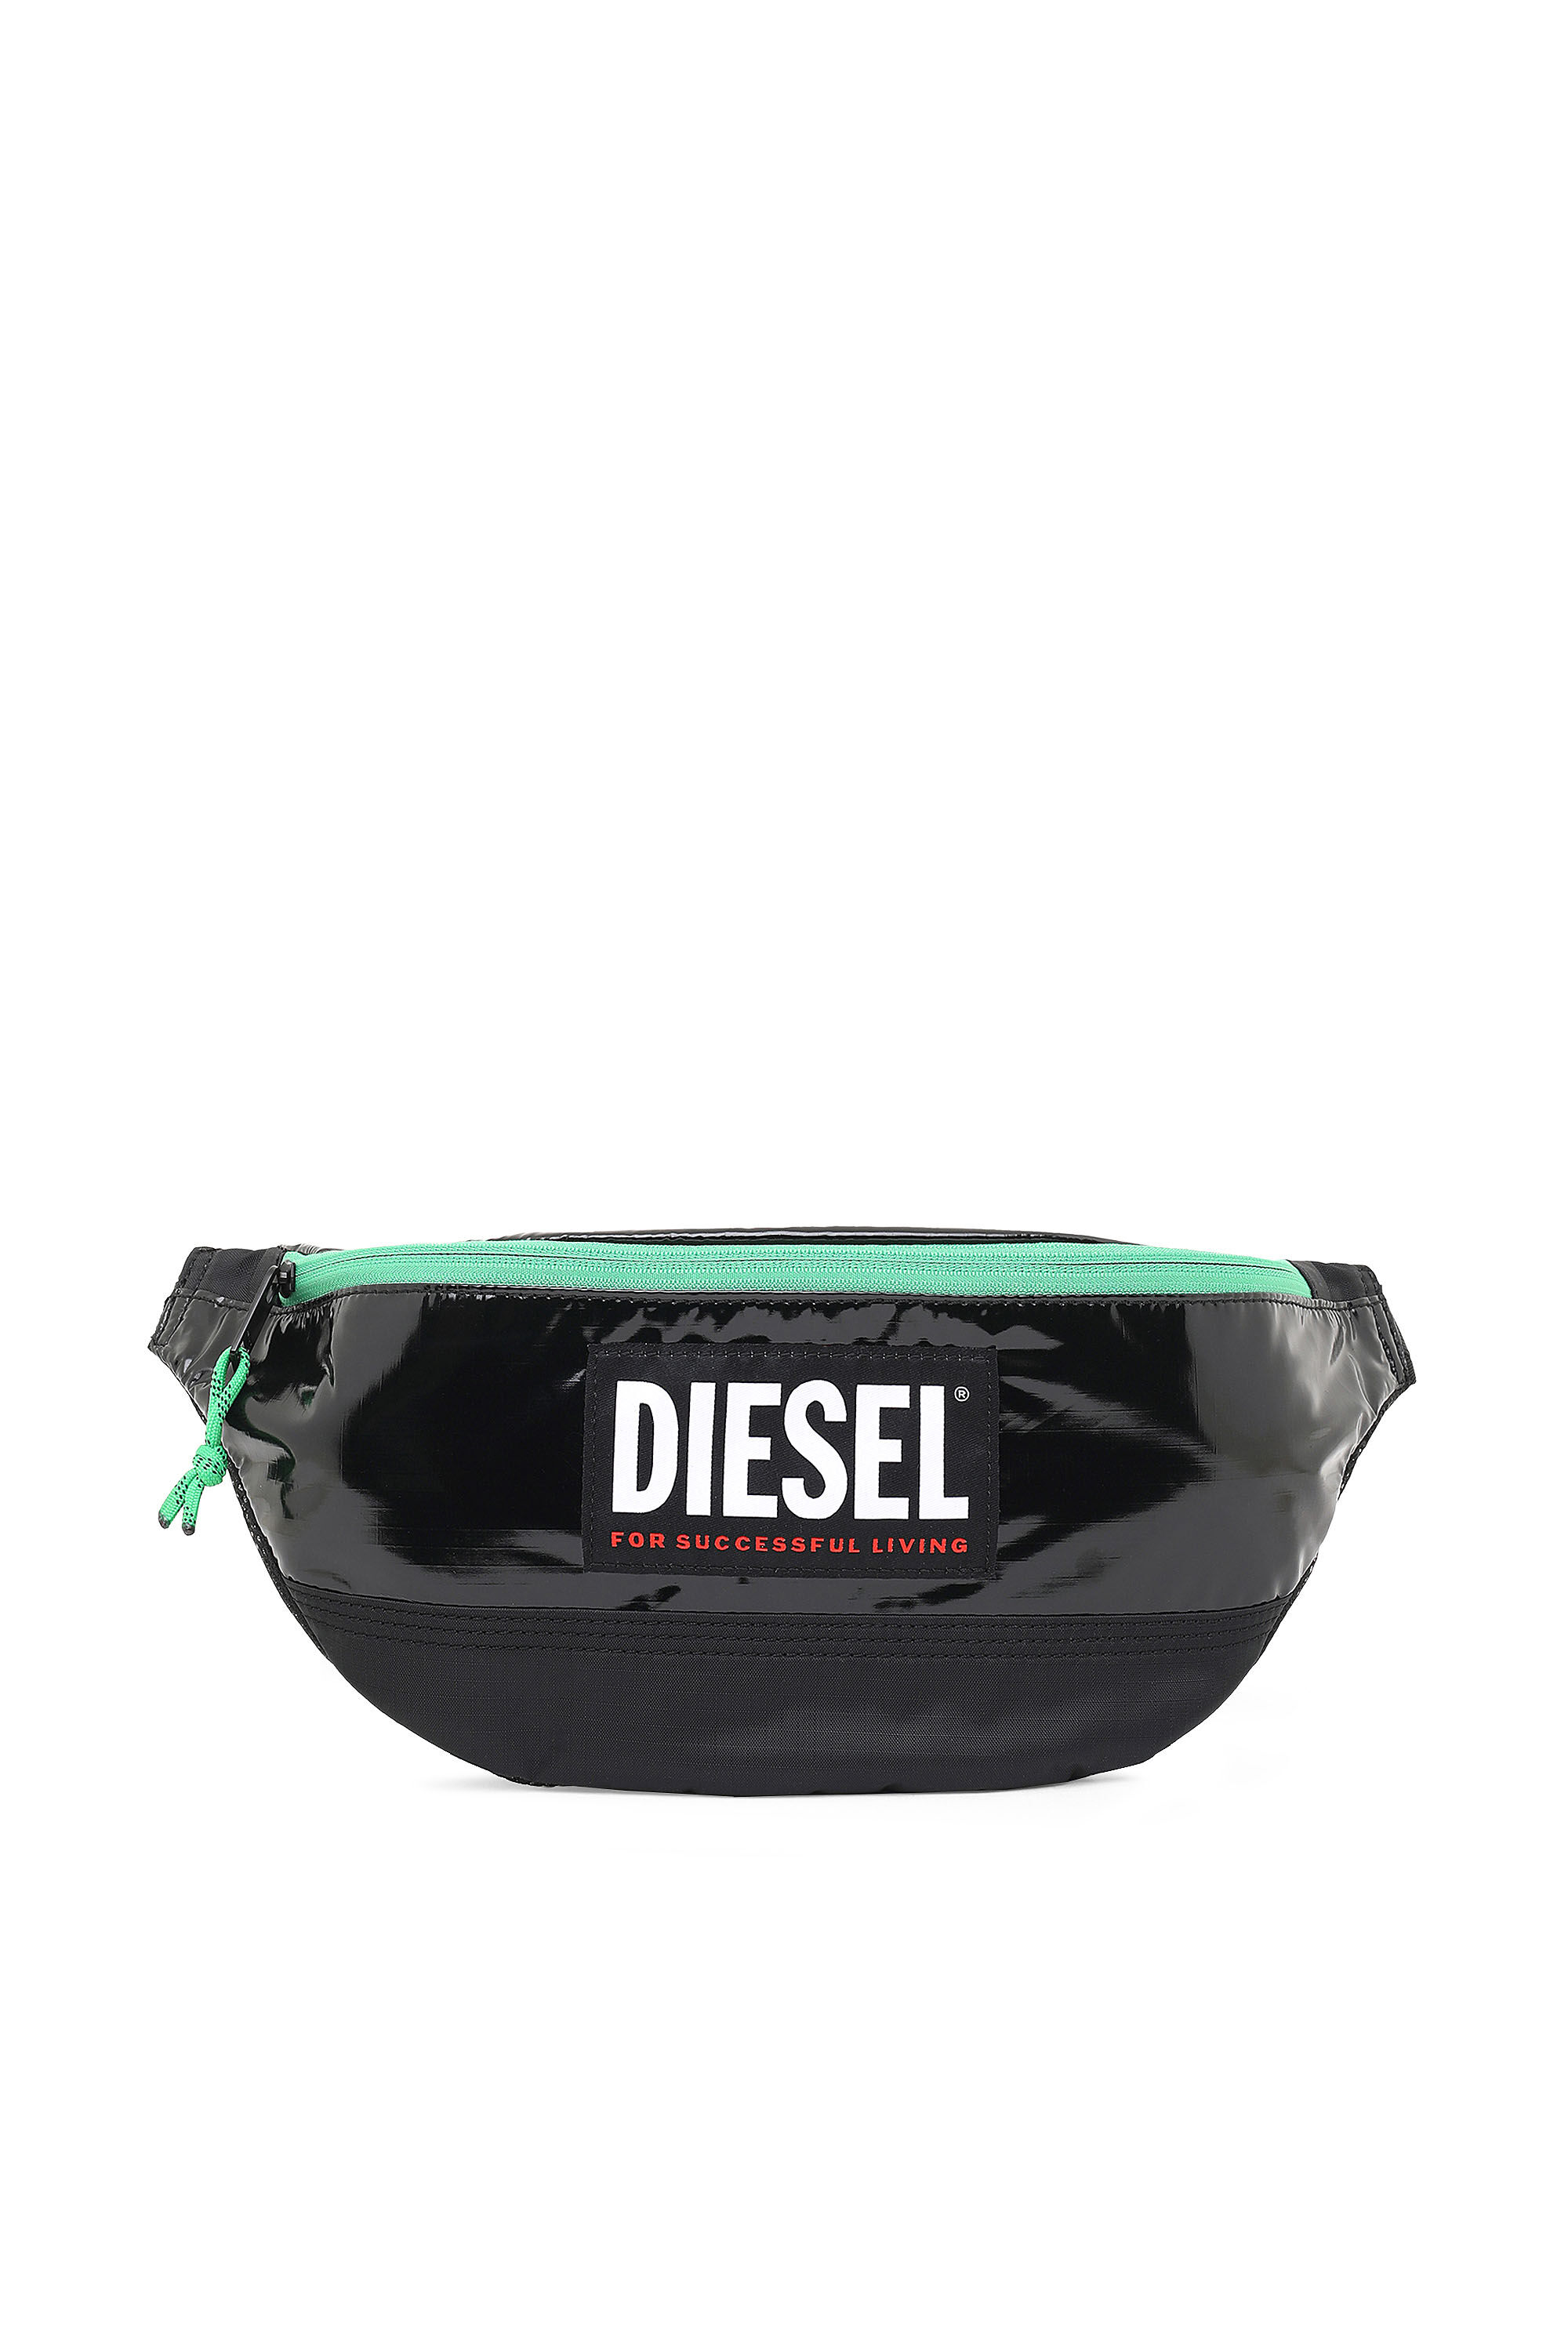 Diesel - LYAM PAT, Black/Green - Image 2